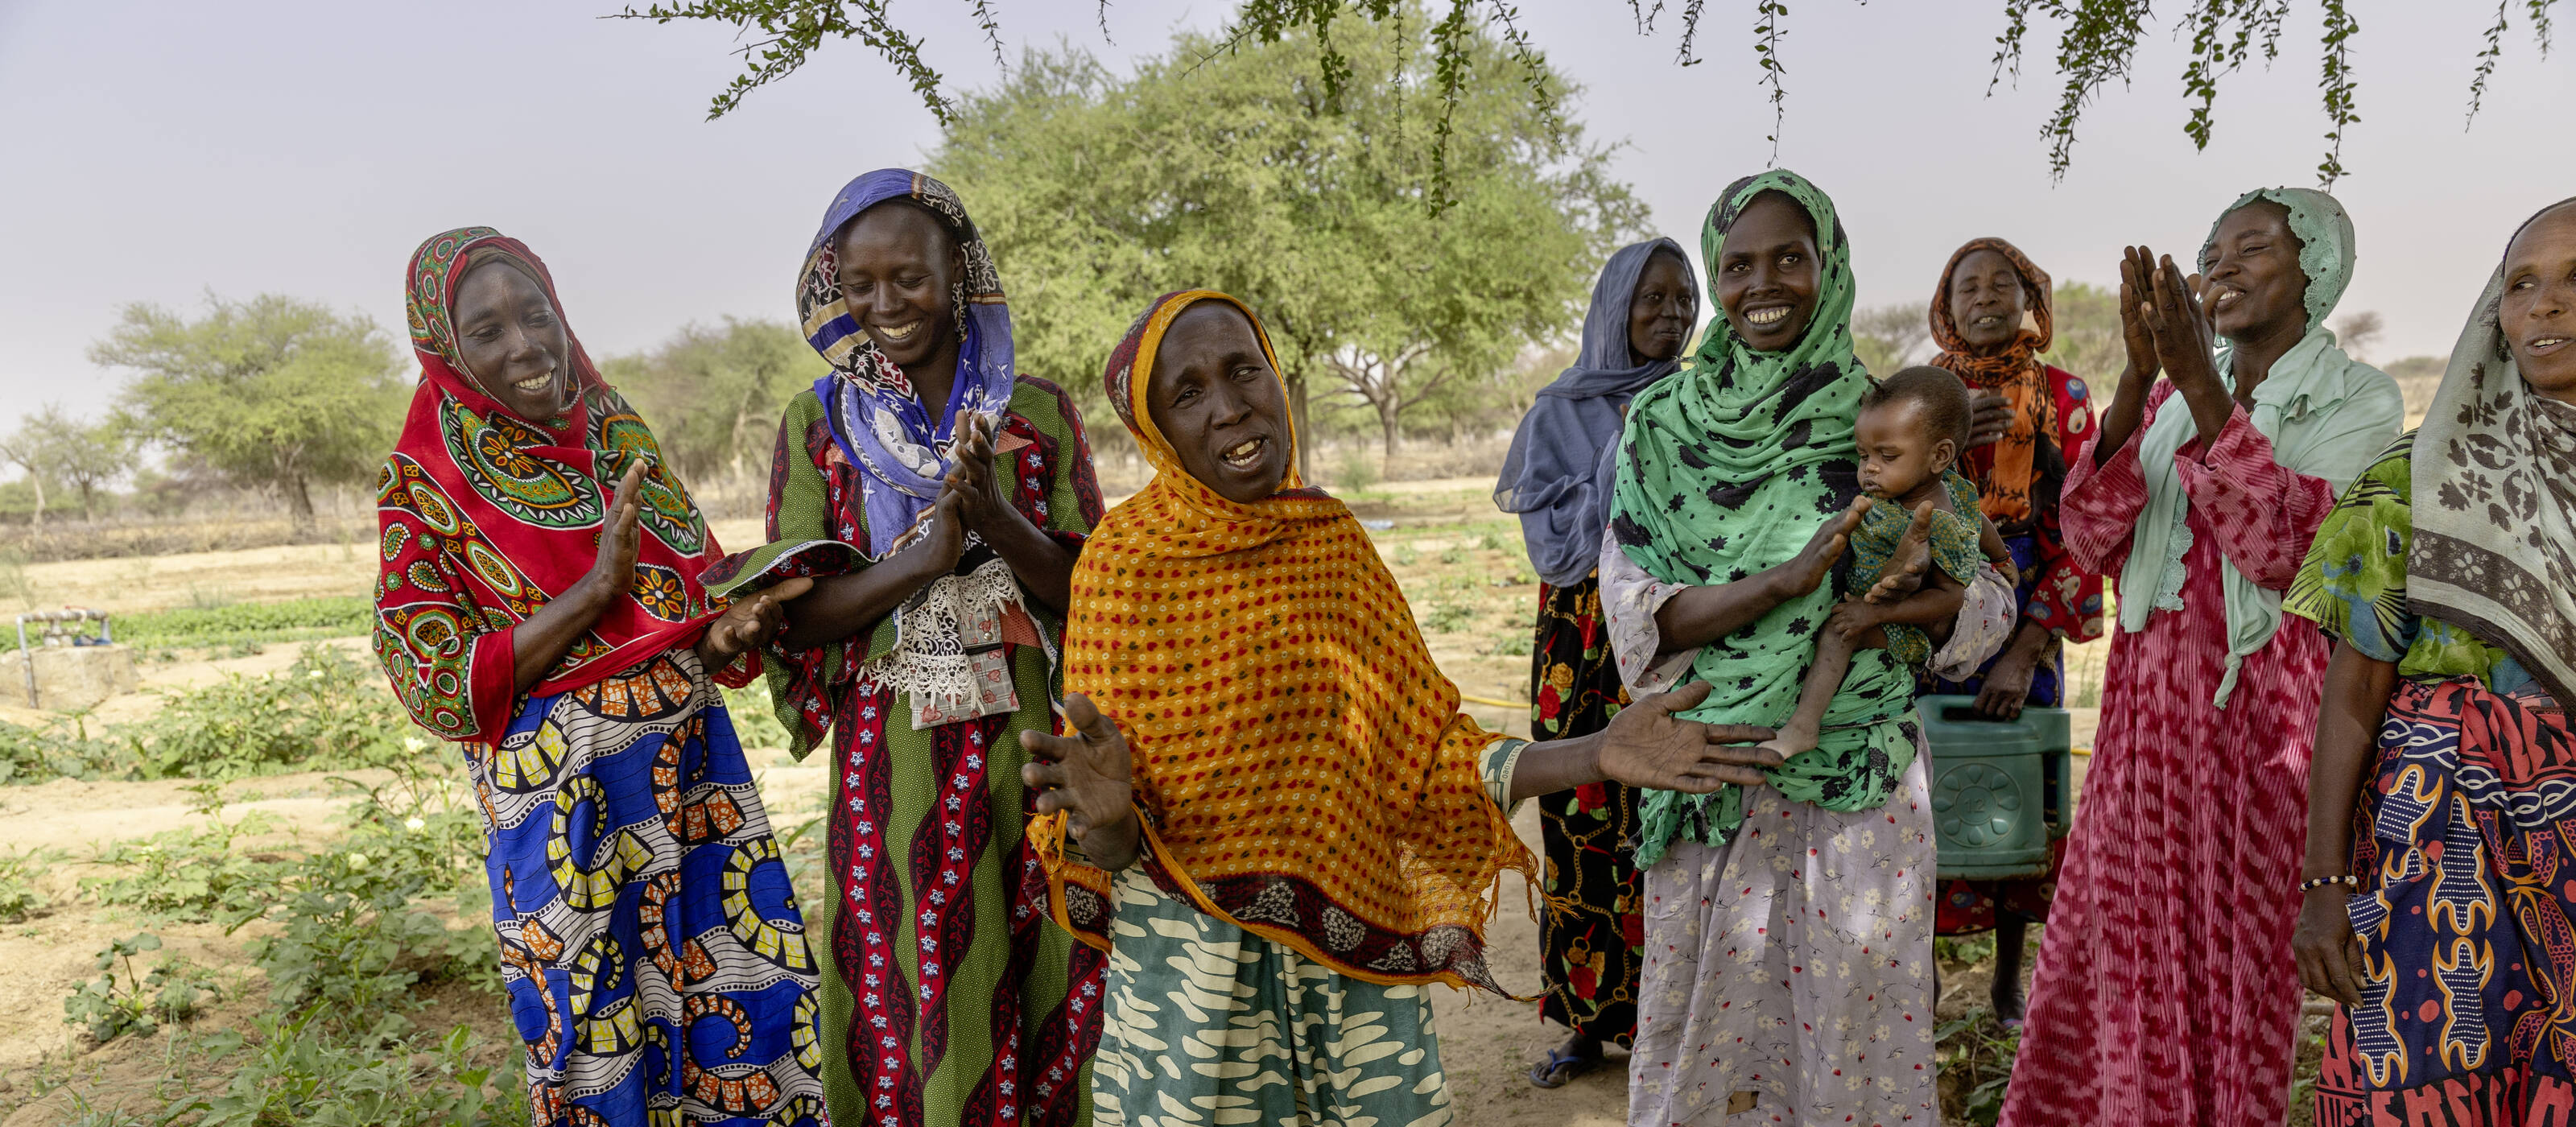 Frauen aus dem Tschad, die eine zentrale Rolle in den lokalen Projekten vor Ort spielen.